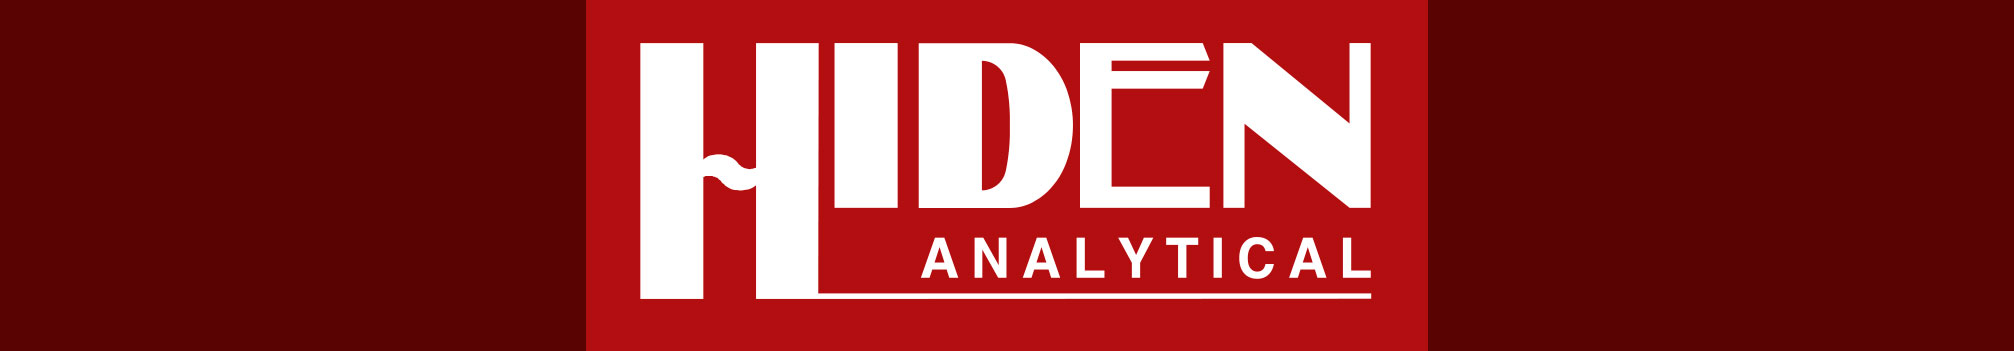 Logotipo de HIDEN analytical